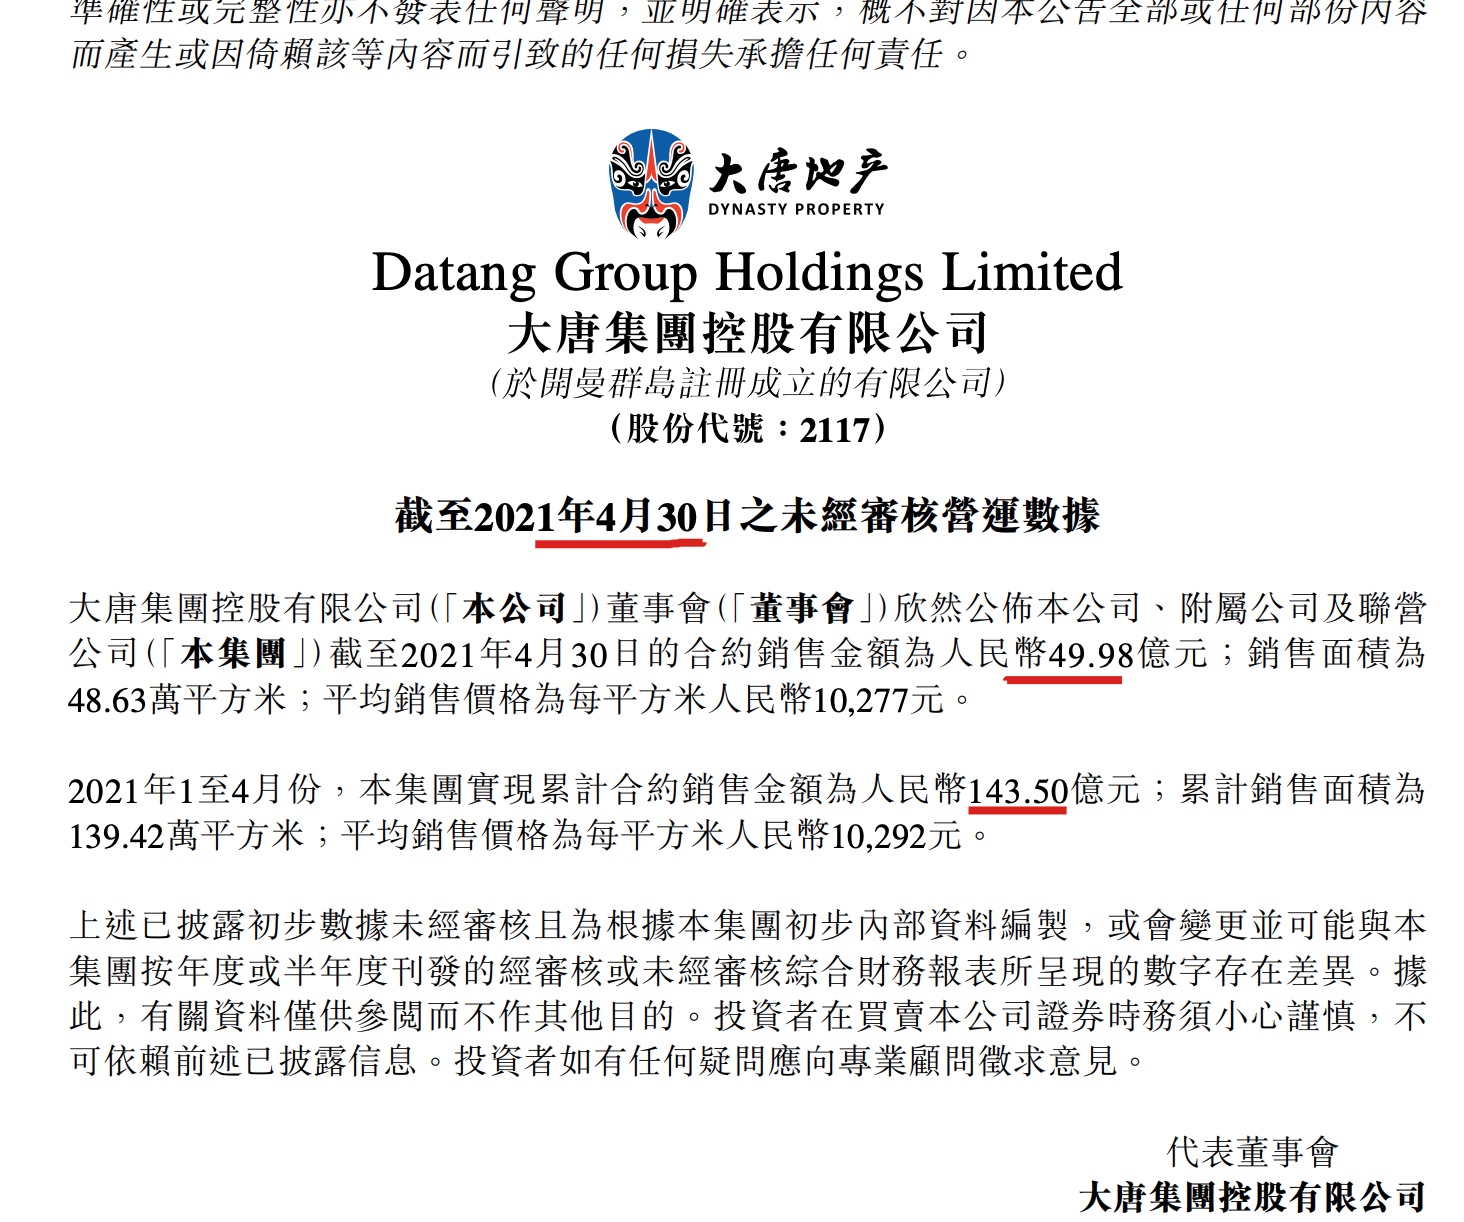 大唐集团控股前4月销售143.5亿 行业百强排名72